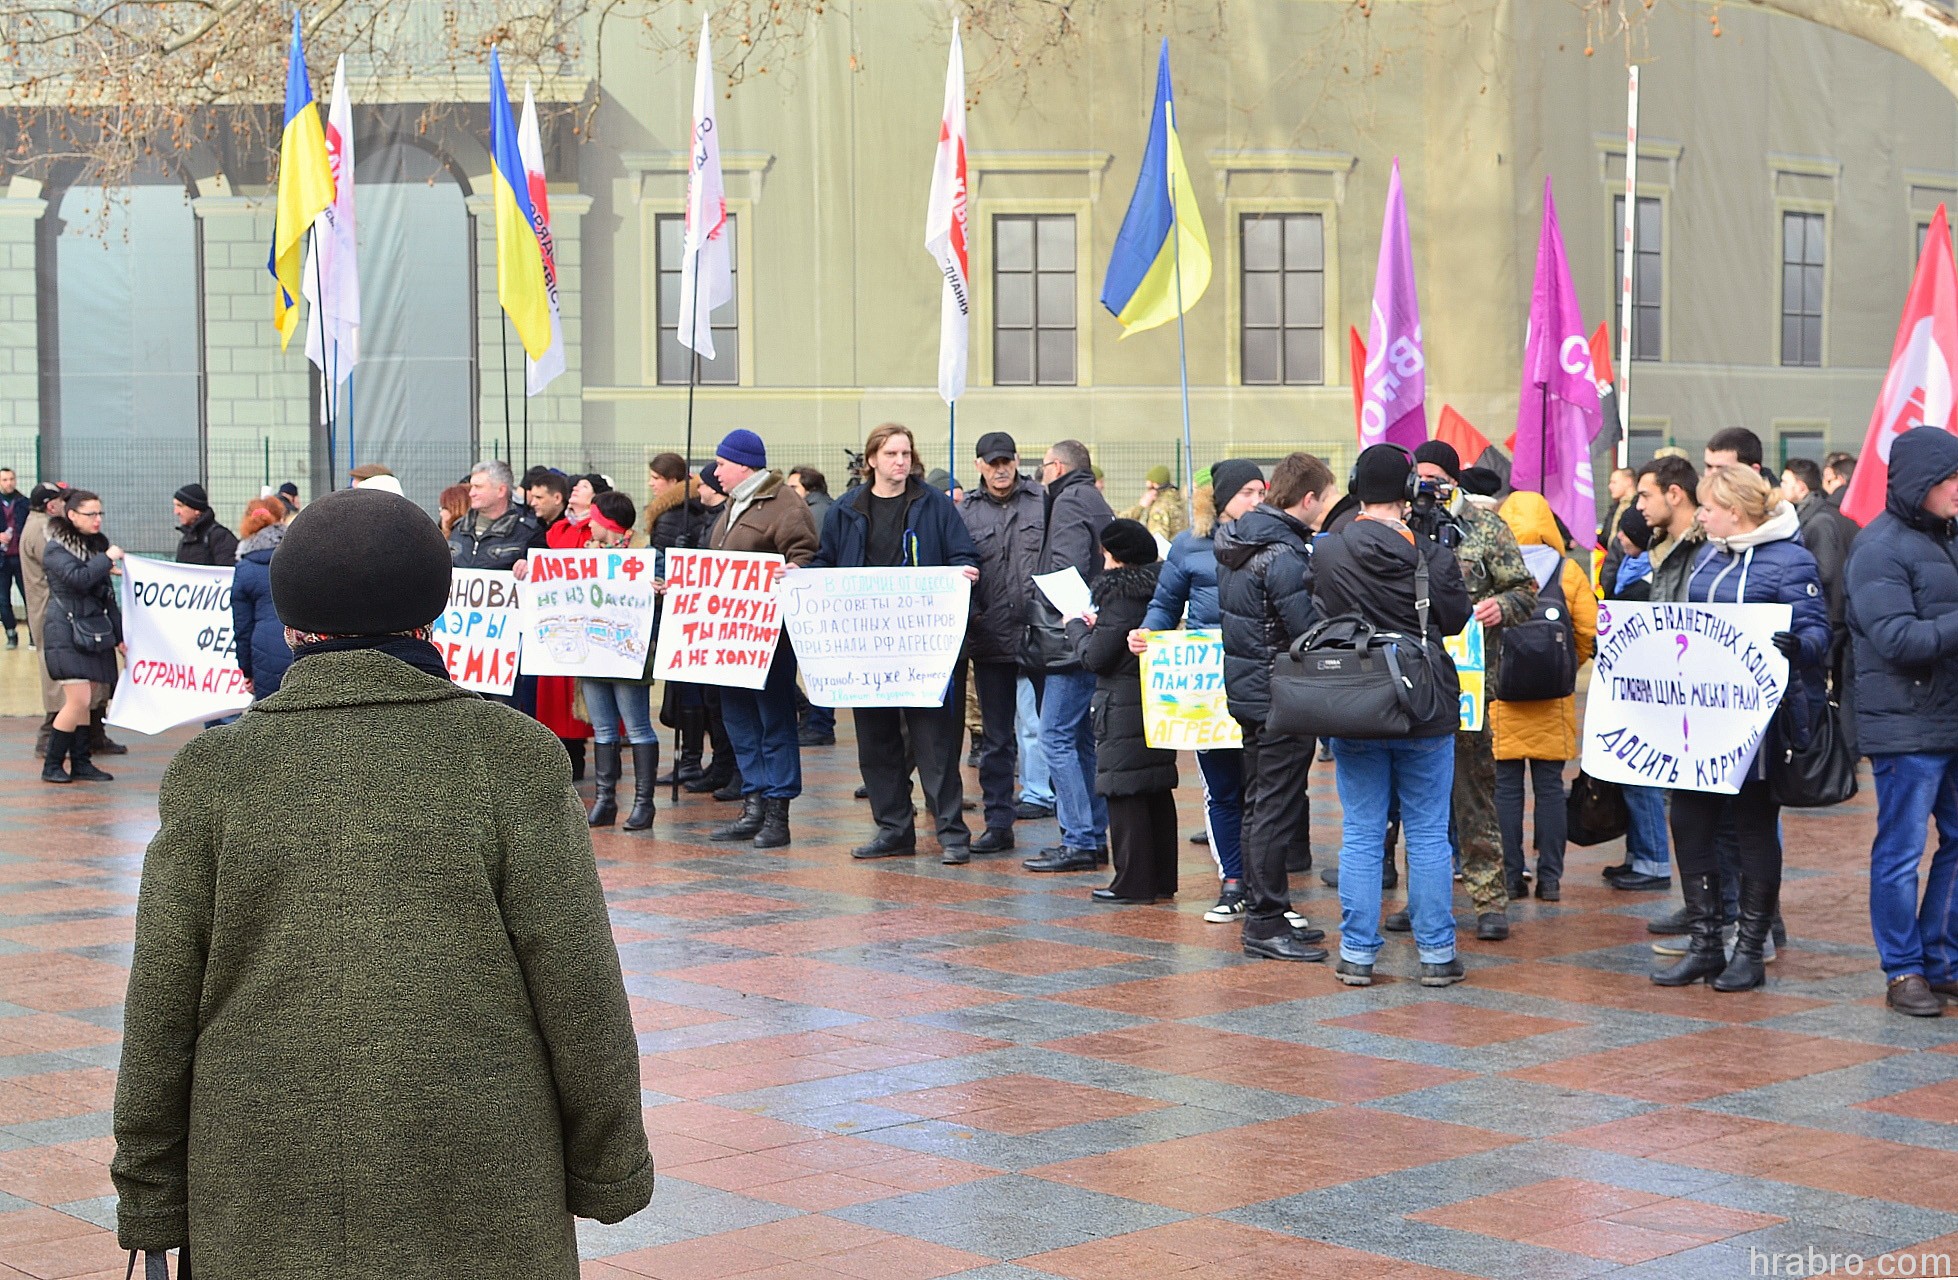 Одесса сегодня новости последнего часа. Митинг в Одессе сейчас. Одесса новости. Демонстрация а Одессе сейчас. Митинги в Одессе сегодня.